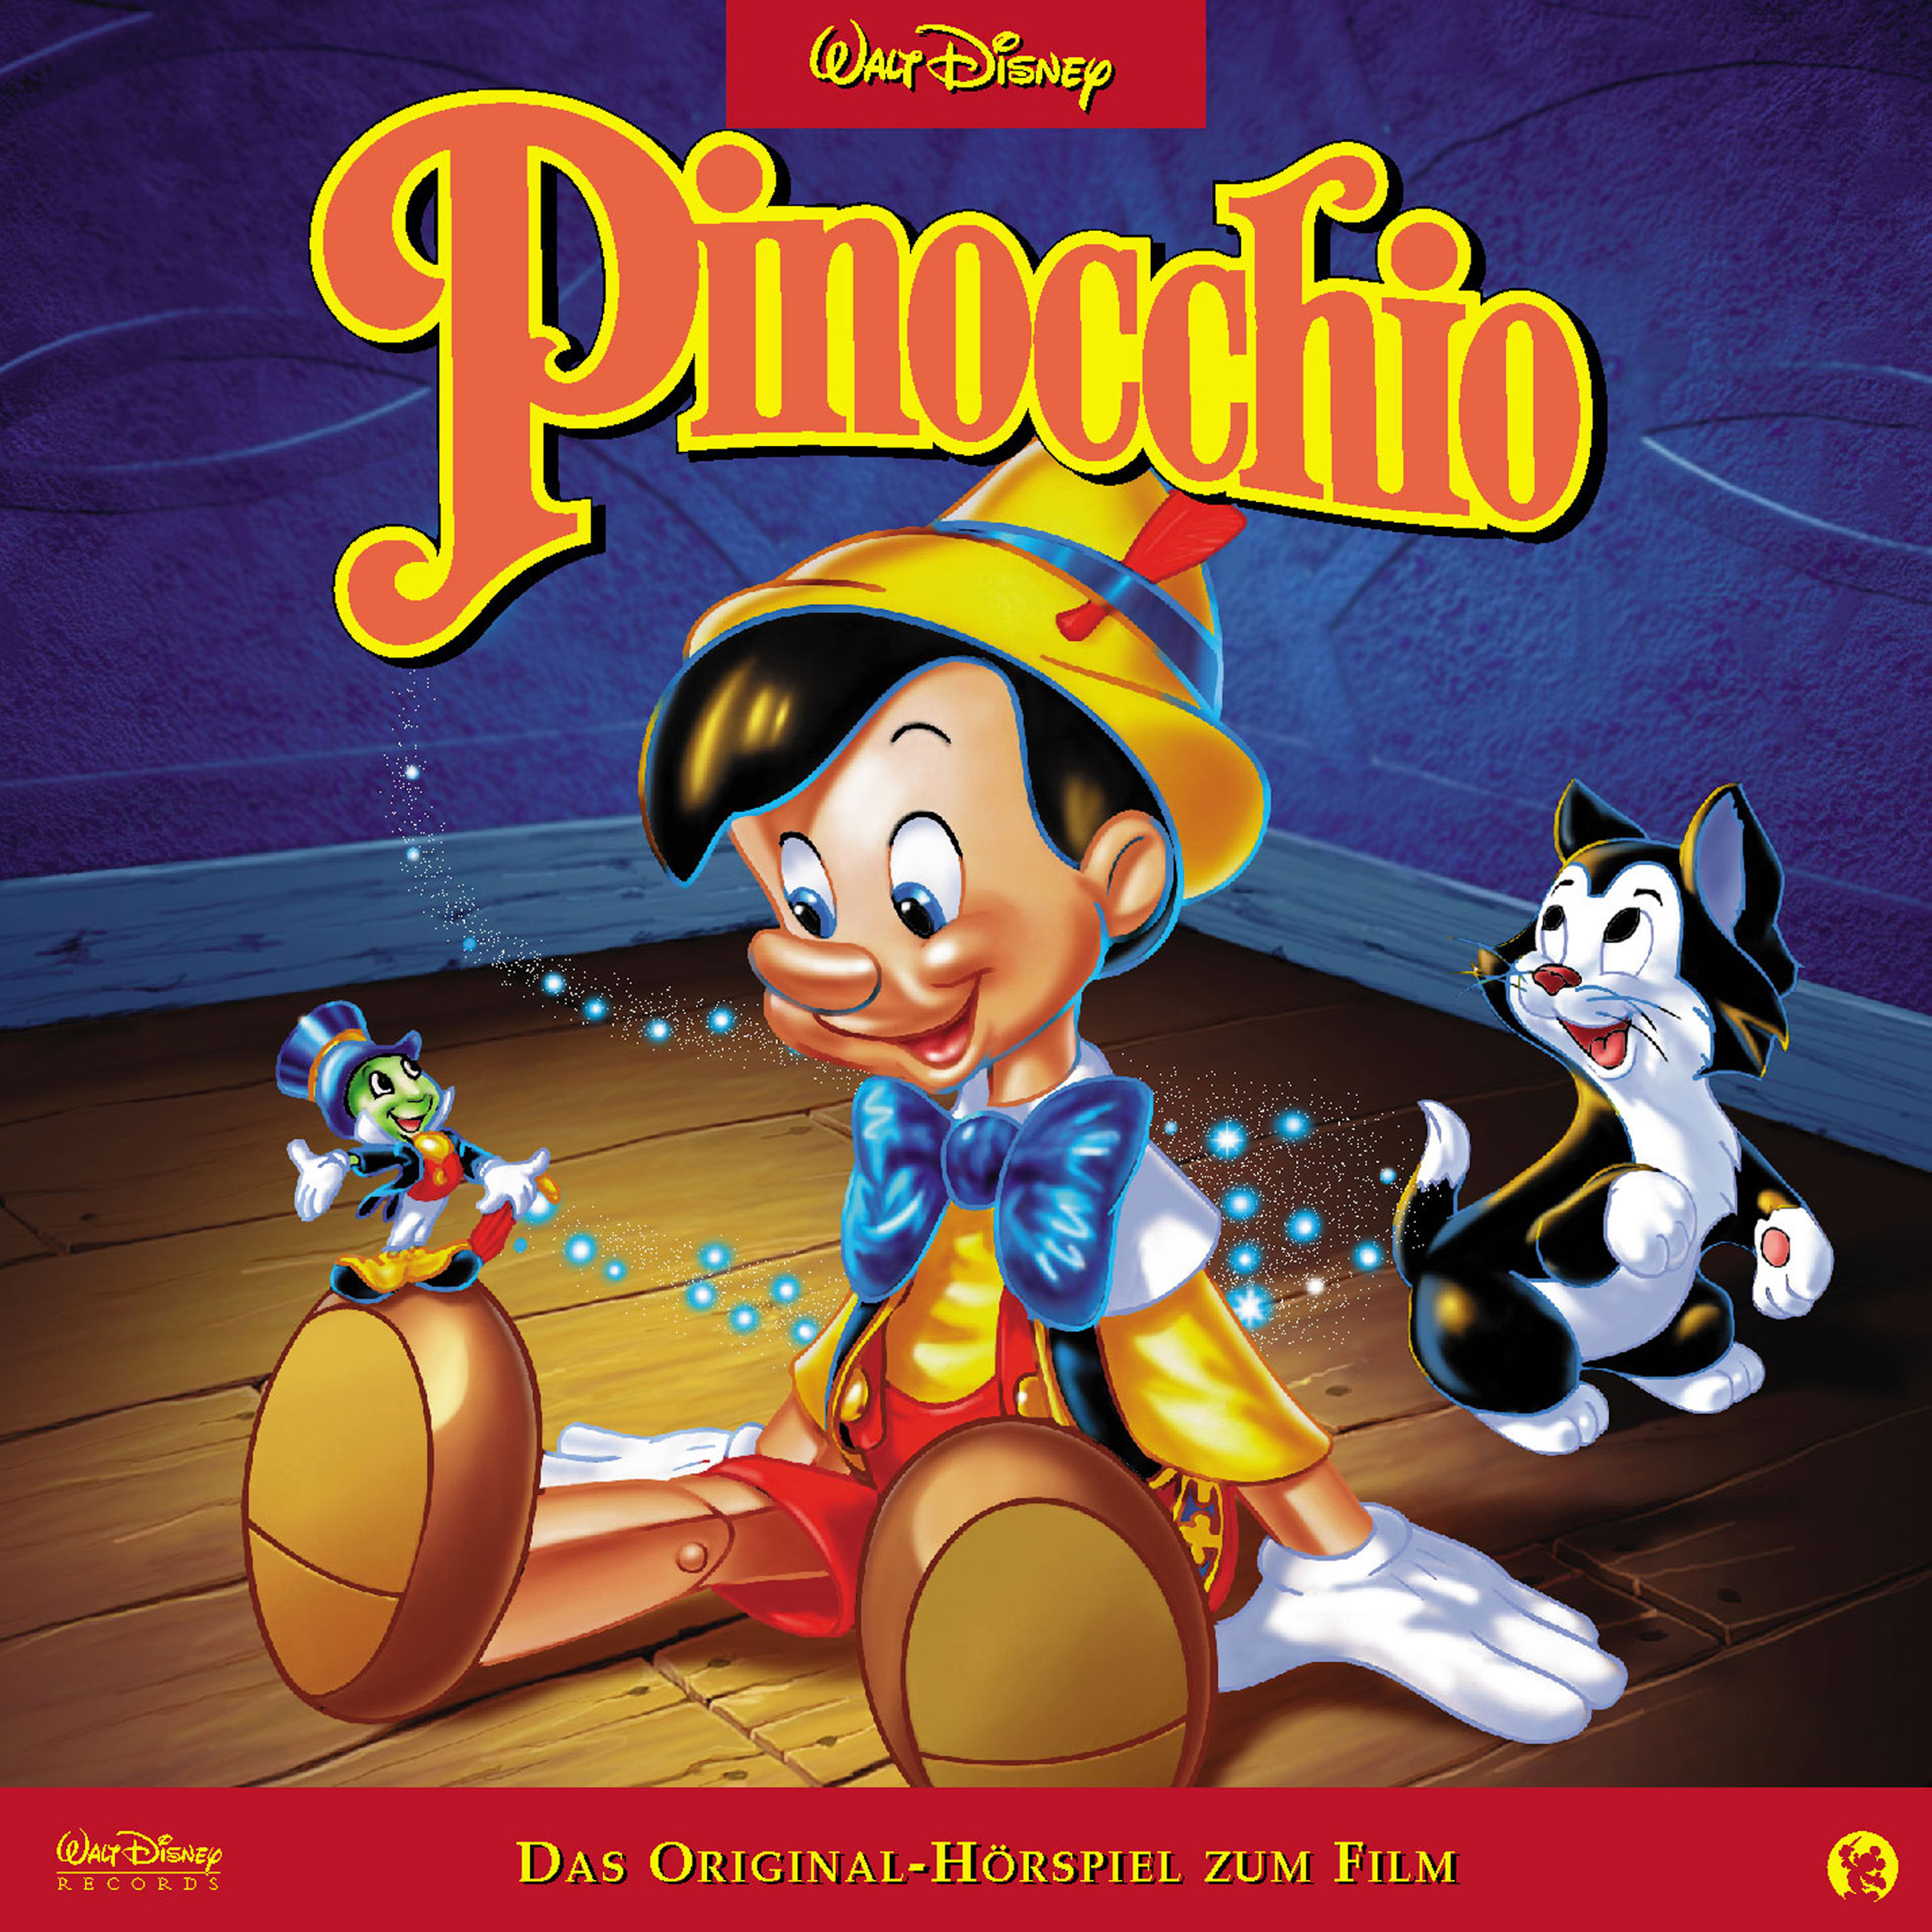 Disney - Pinocchio Hörbuch sicher downloaden bei Weltbild.at